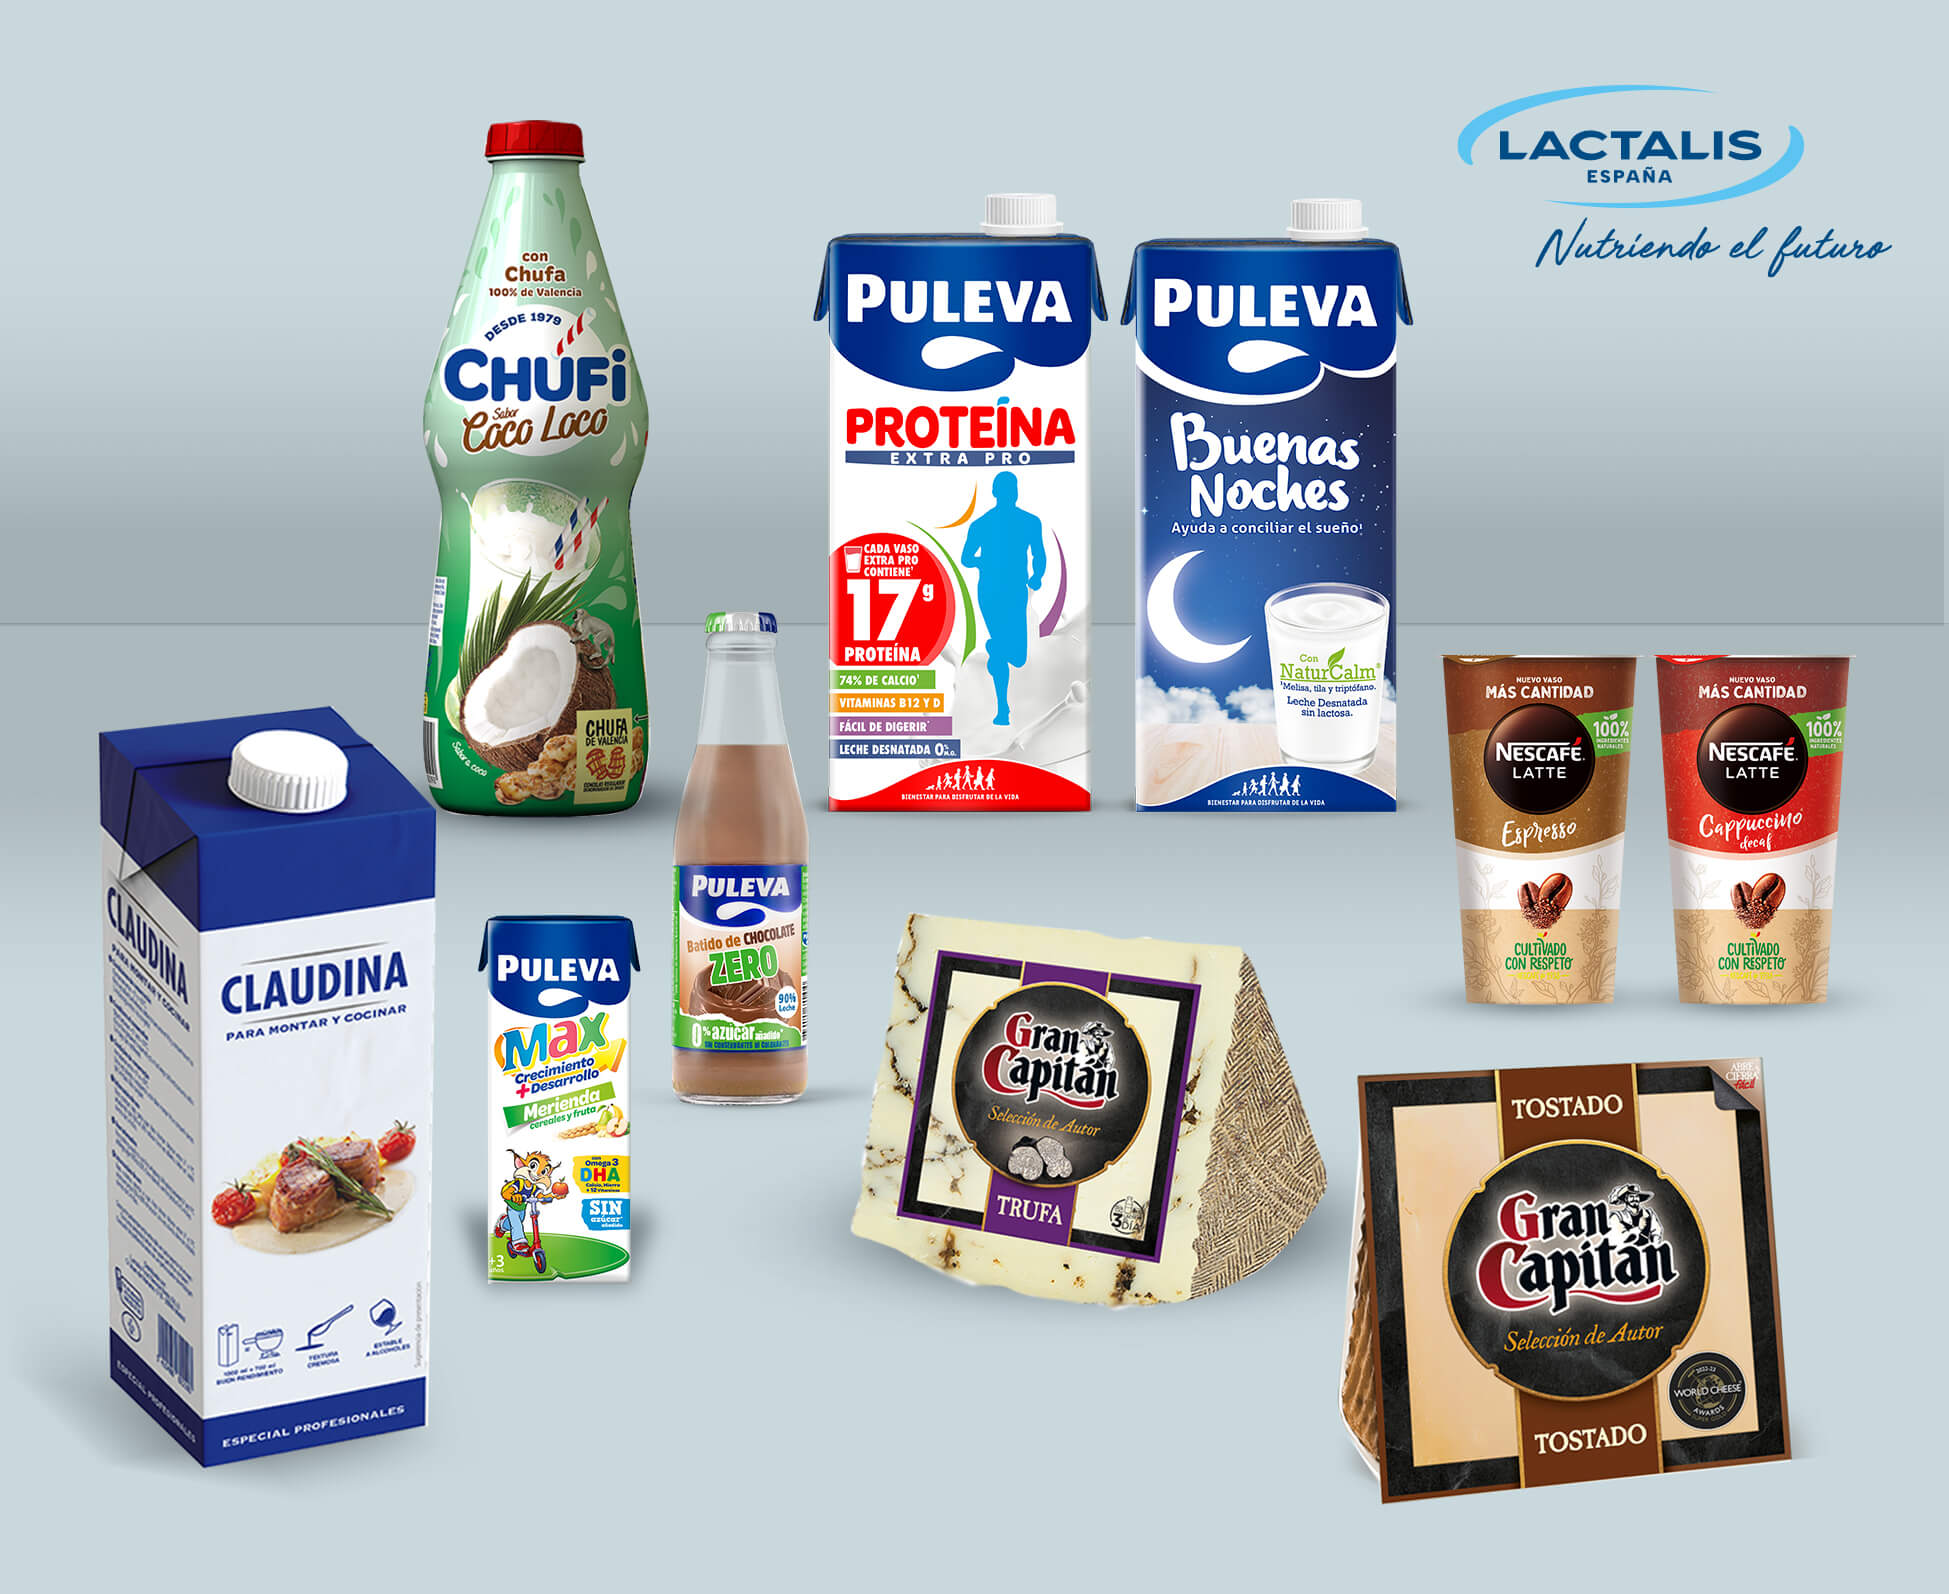 Lactalis España ofrece más de un millar de alimentos lácteos con un denominador común: alto valor nutricional y calidad, seguridad alimentaria y accesibilidad